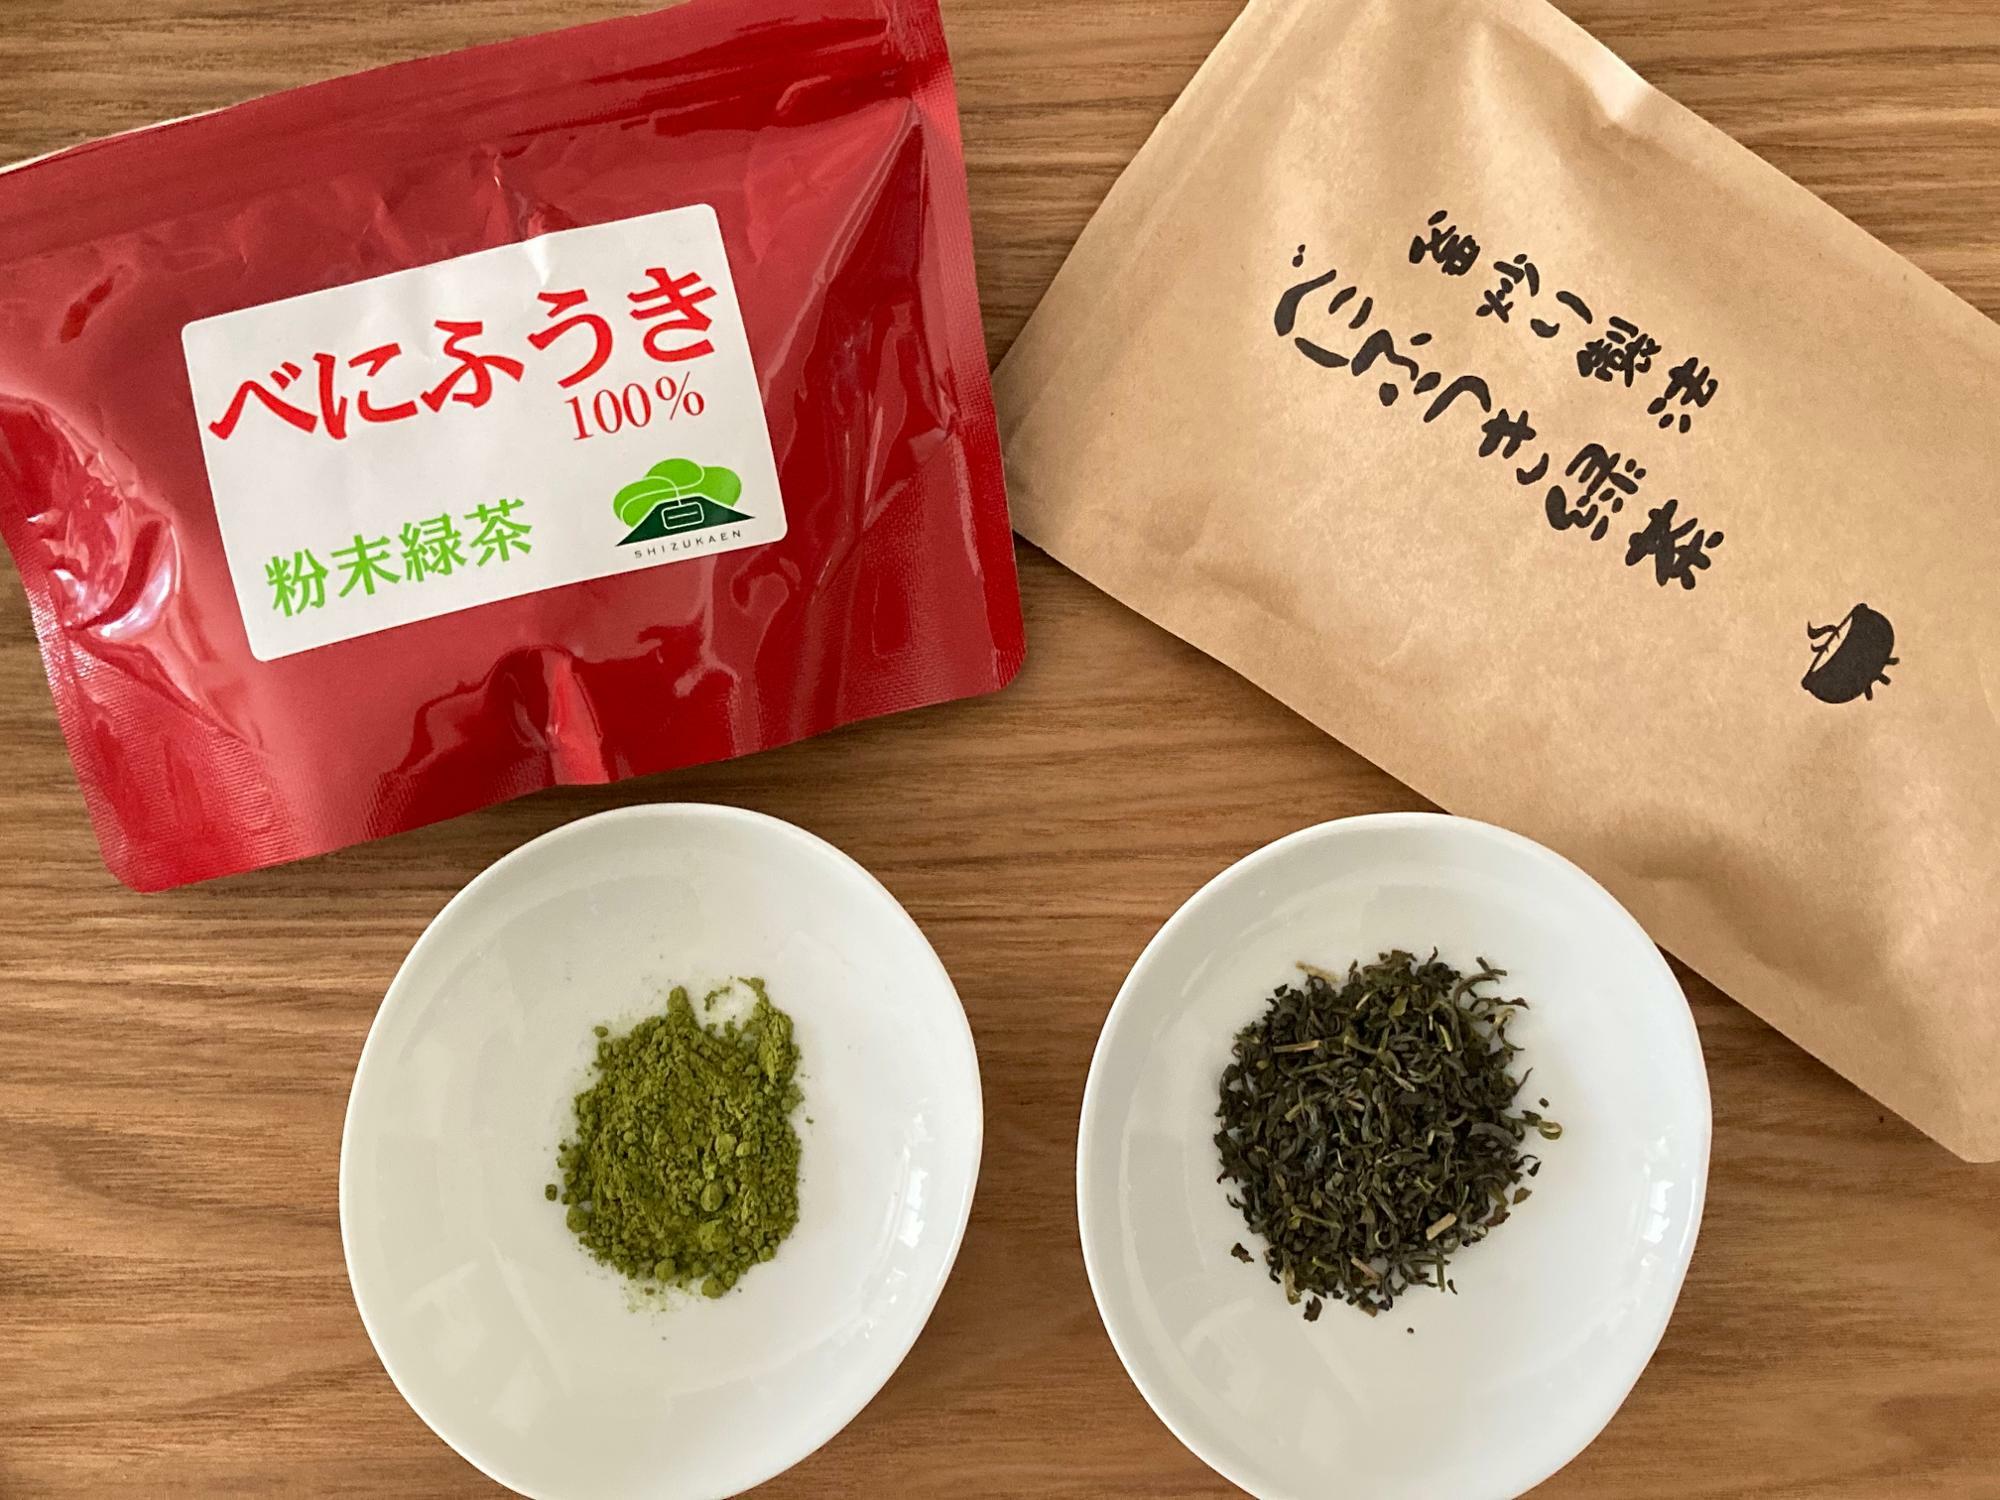 我が家の定番の「べにふうき緑茶」2種類。左は静岡産の粉末タイプ、右は鹿児島産のリーフタイプ（釜炒り製法）。